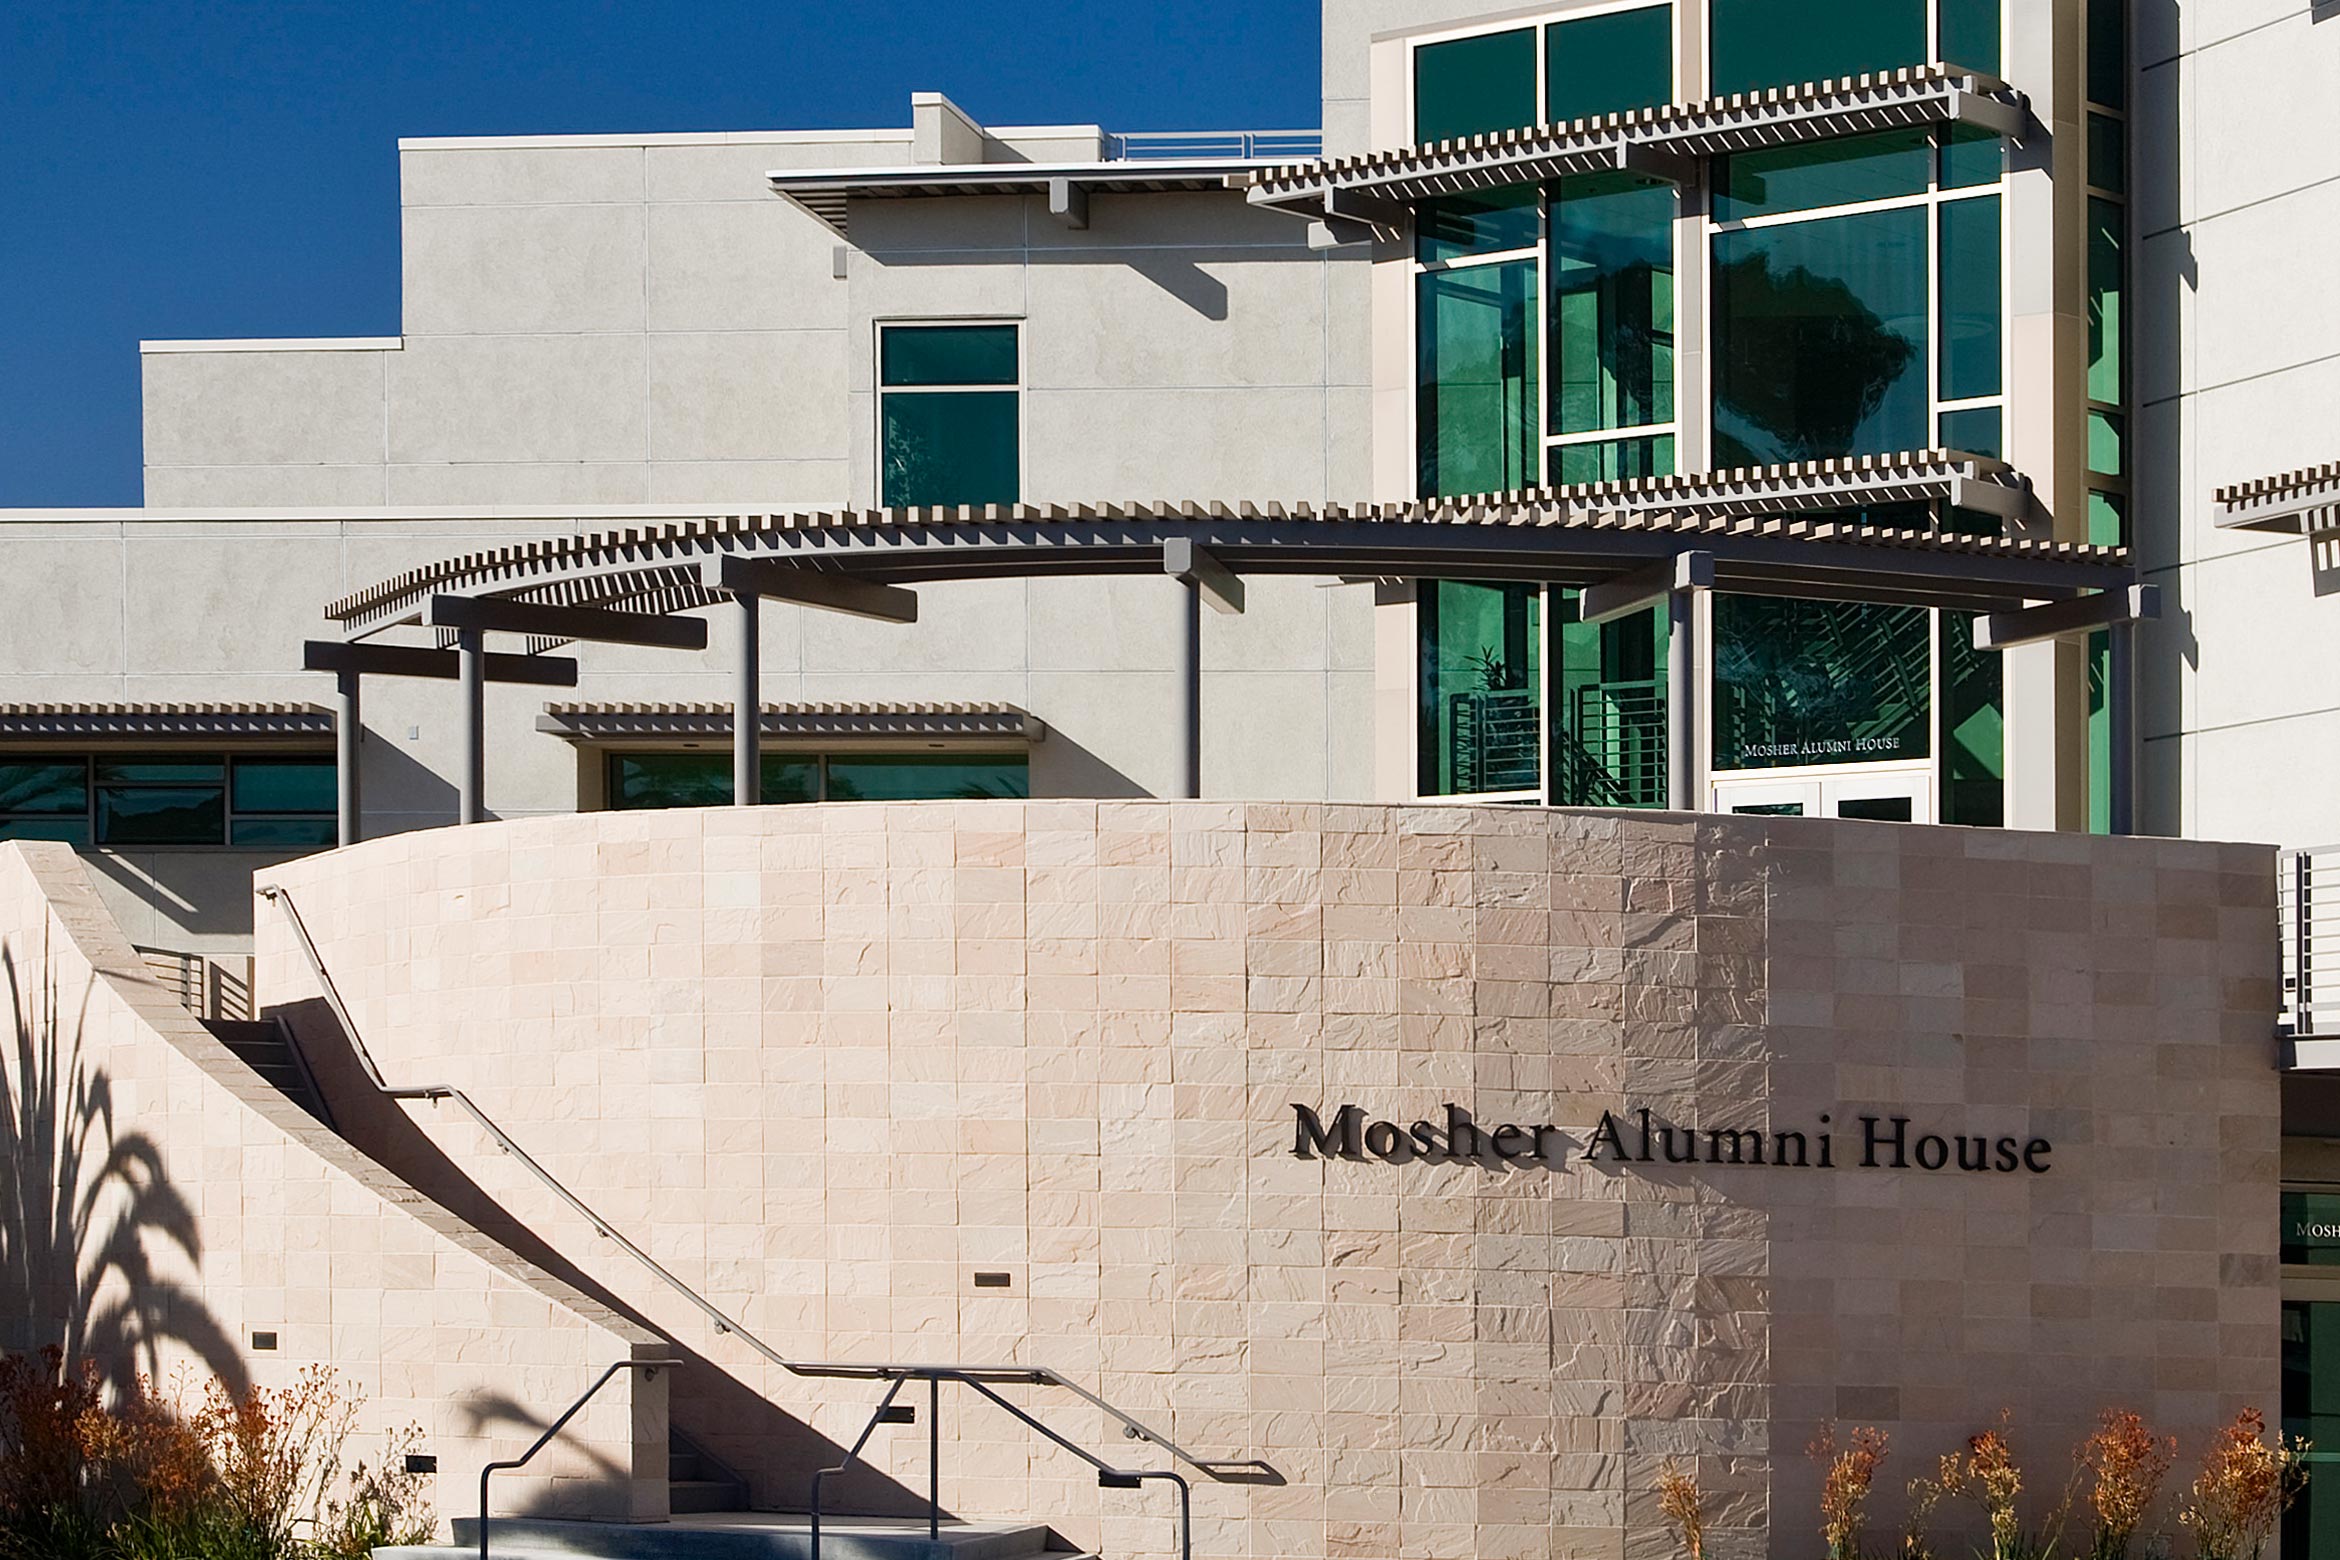 Mosher Alumni House